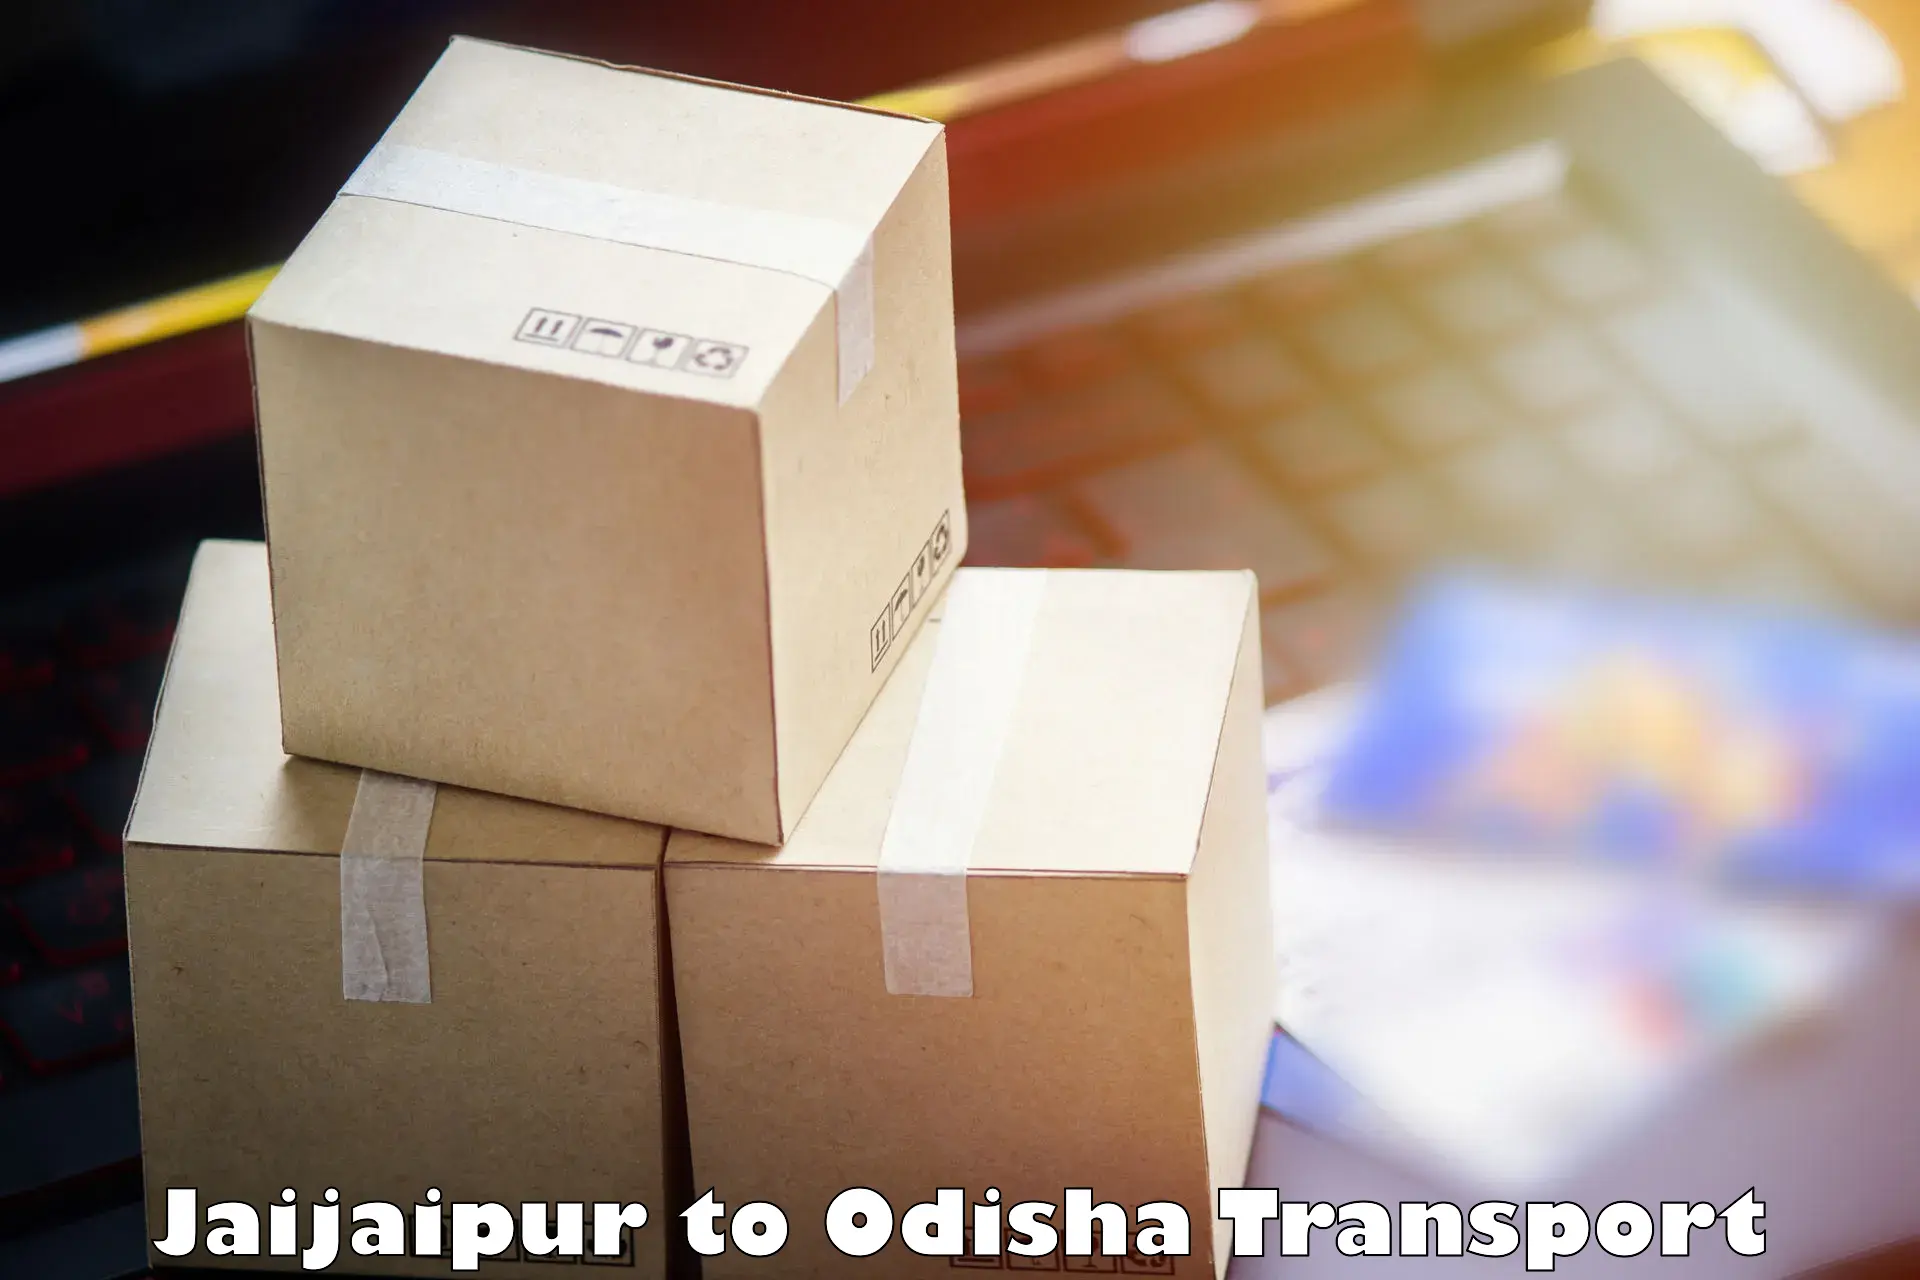 Online transport booking Jaijaipur to Bhubaneswar